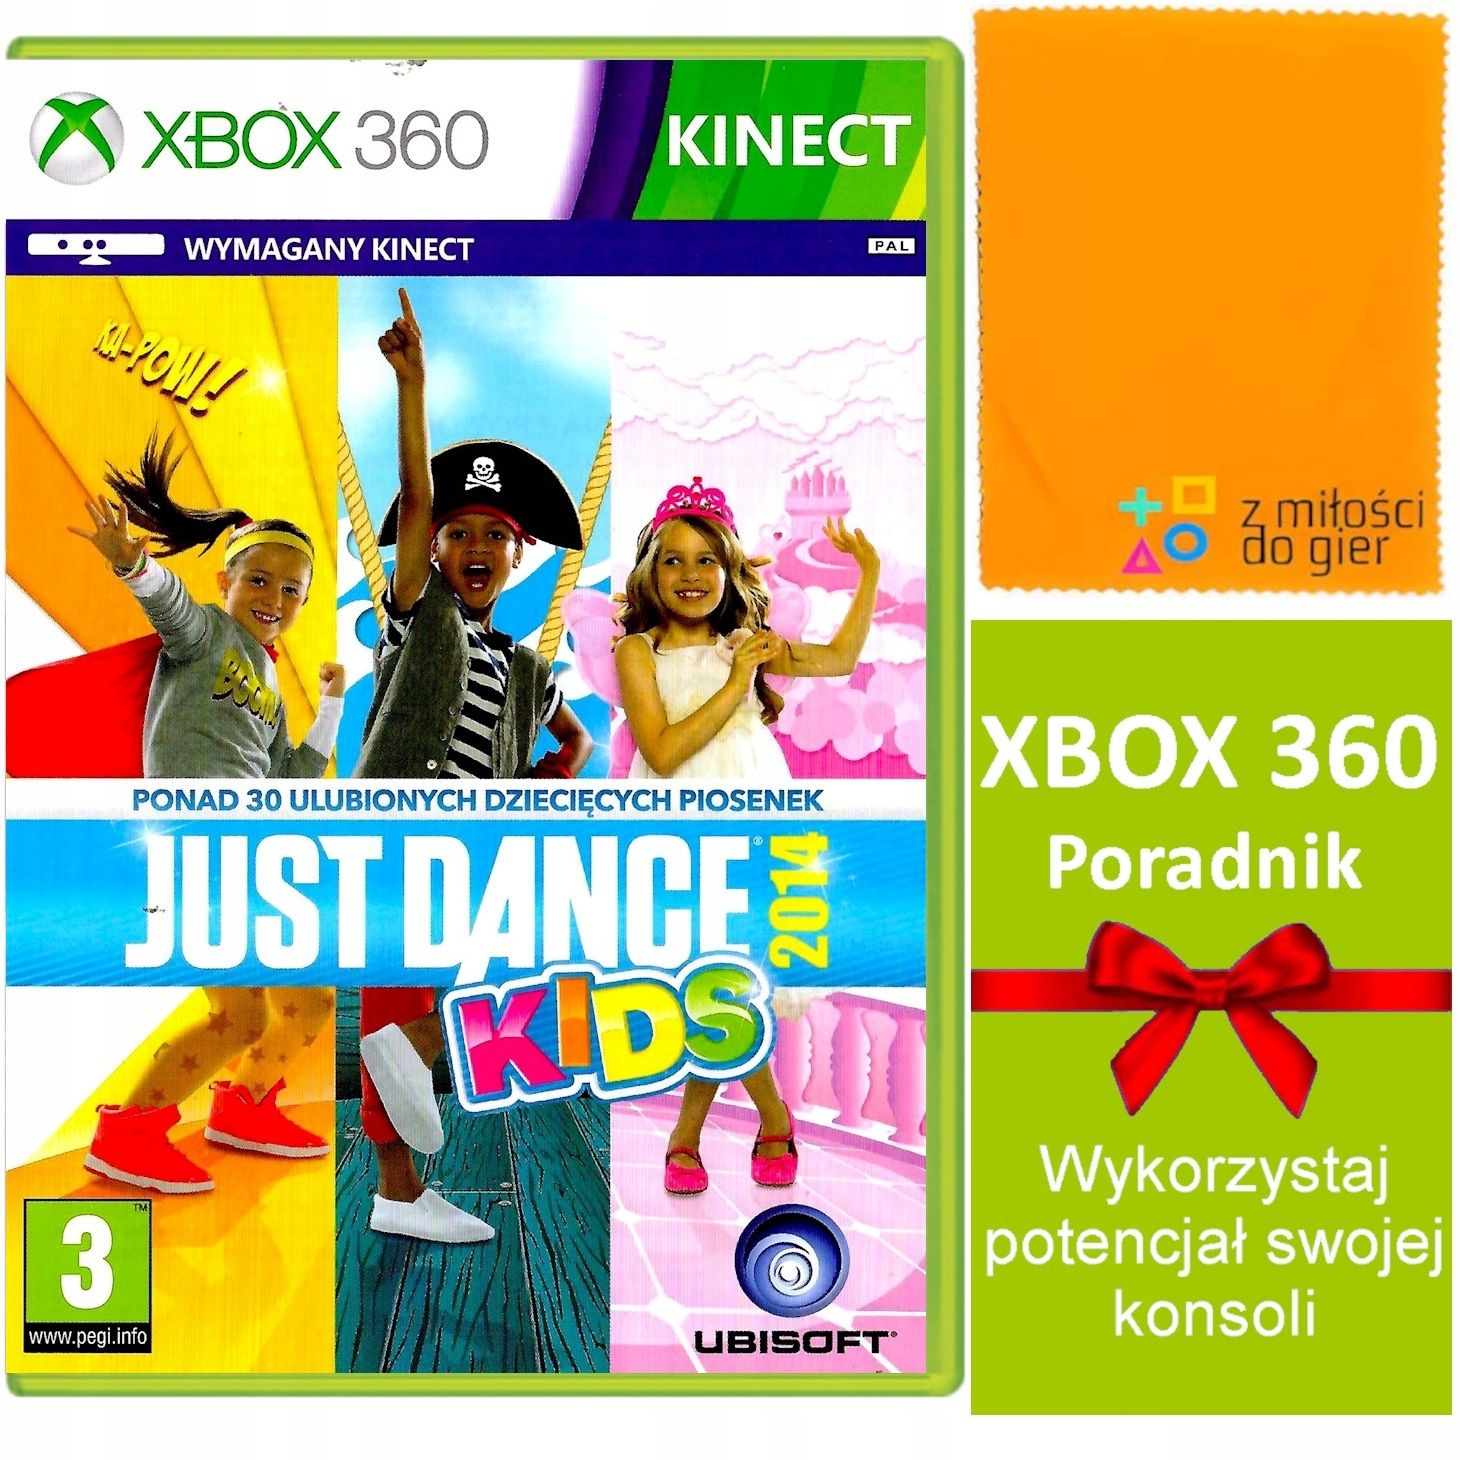 Xbox 360 Just Dance Kids 2014 Polskie Wydanie szybka wysyłka